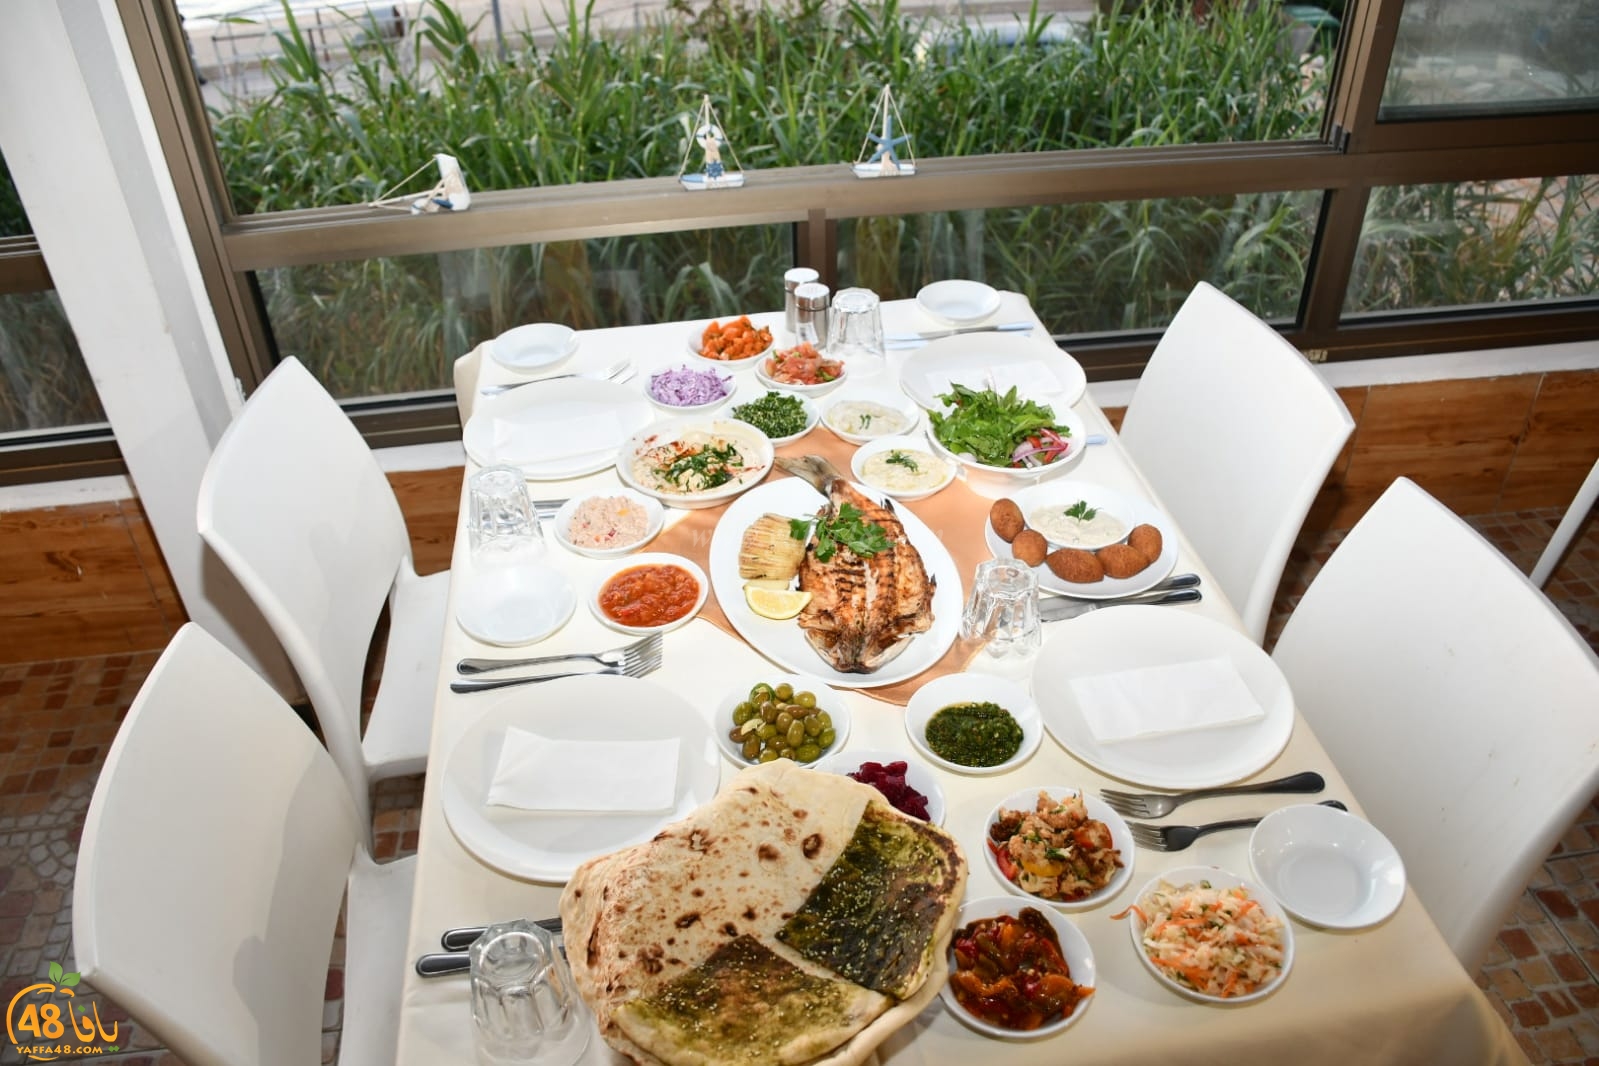  وأخيراً: افتتاح مطعم عروس البحر باباي الأقرب لشاطئ بحر يافا 